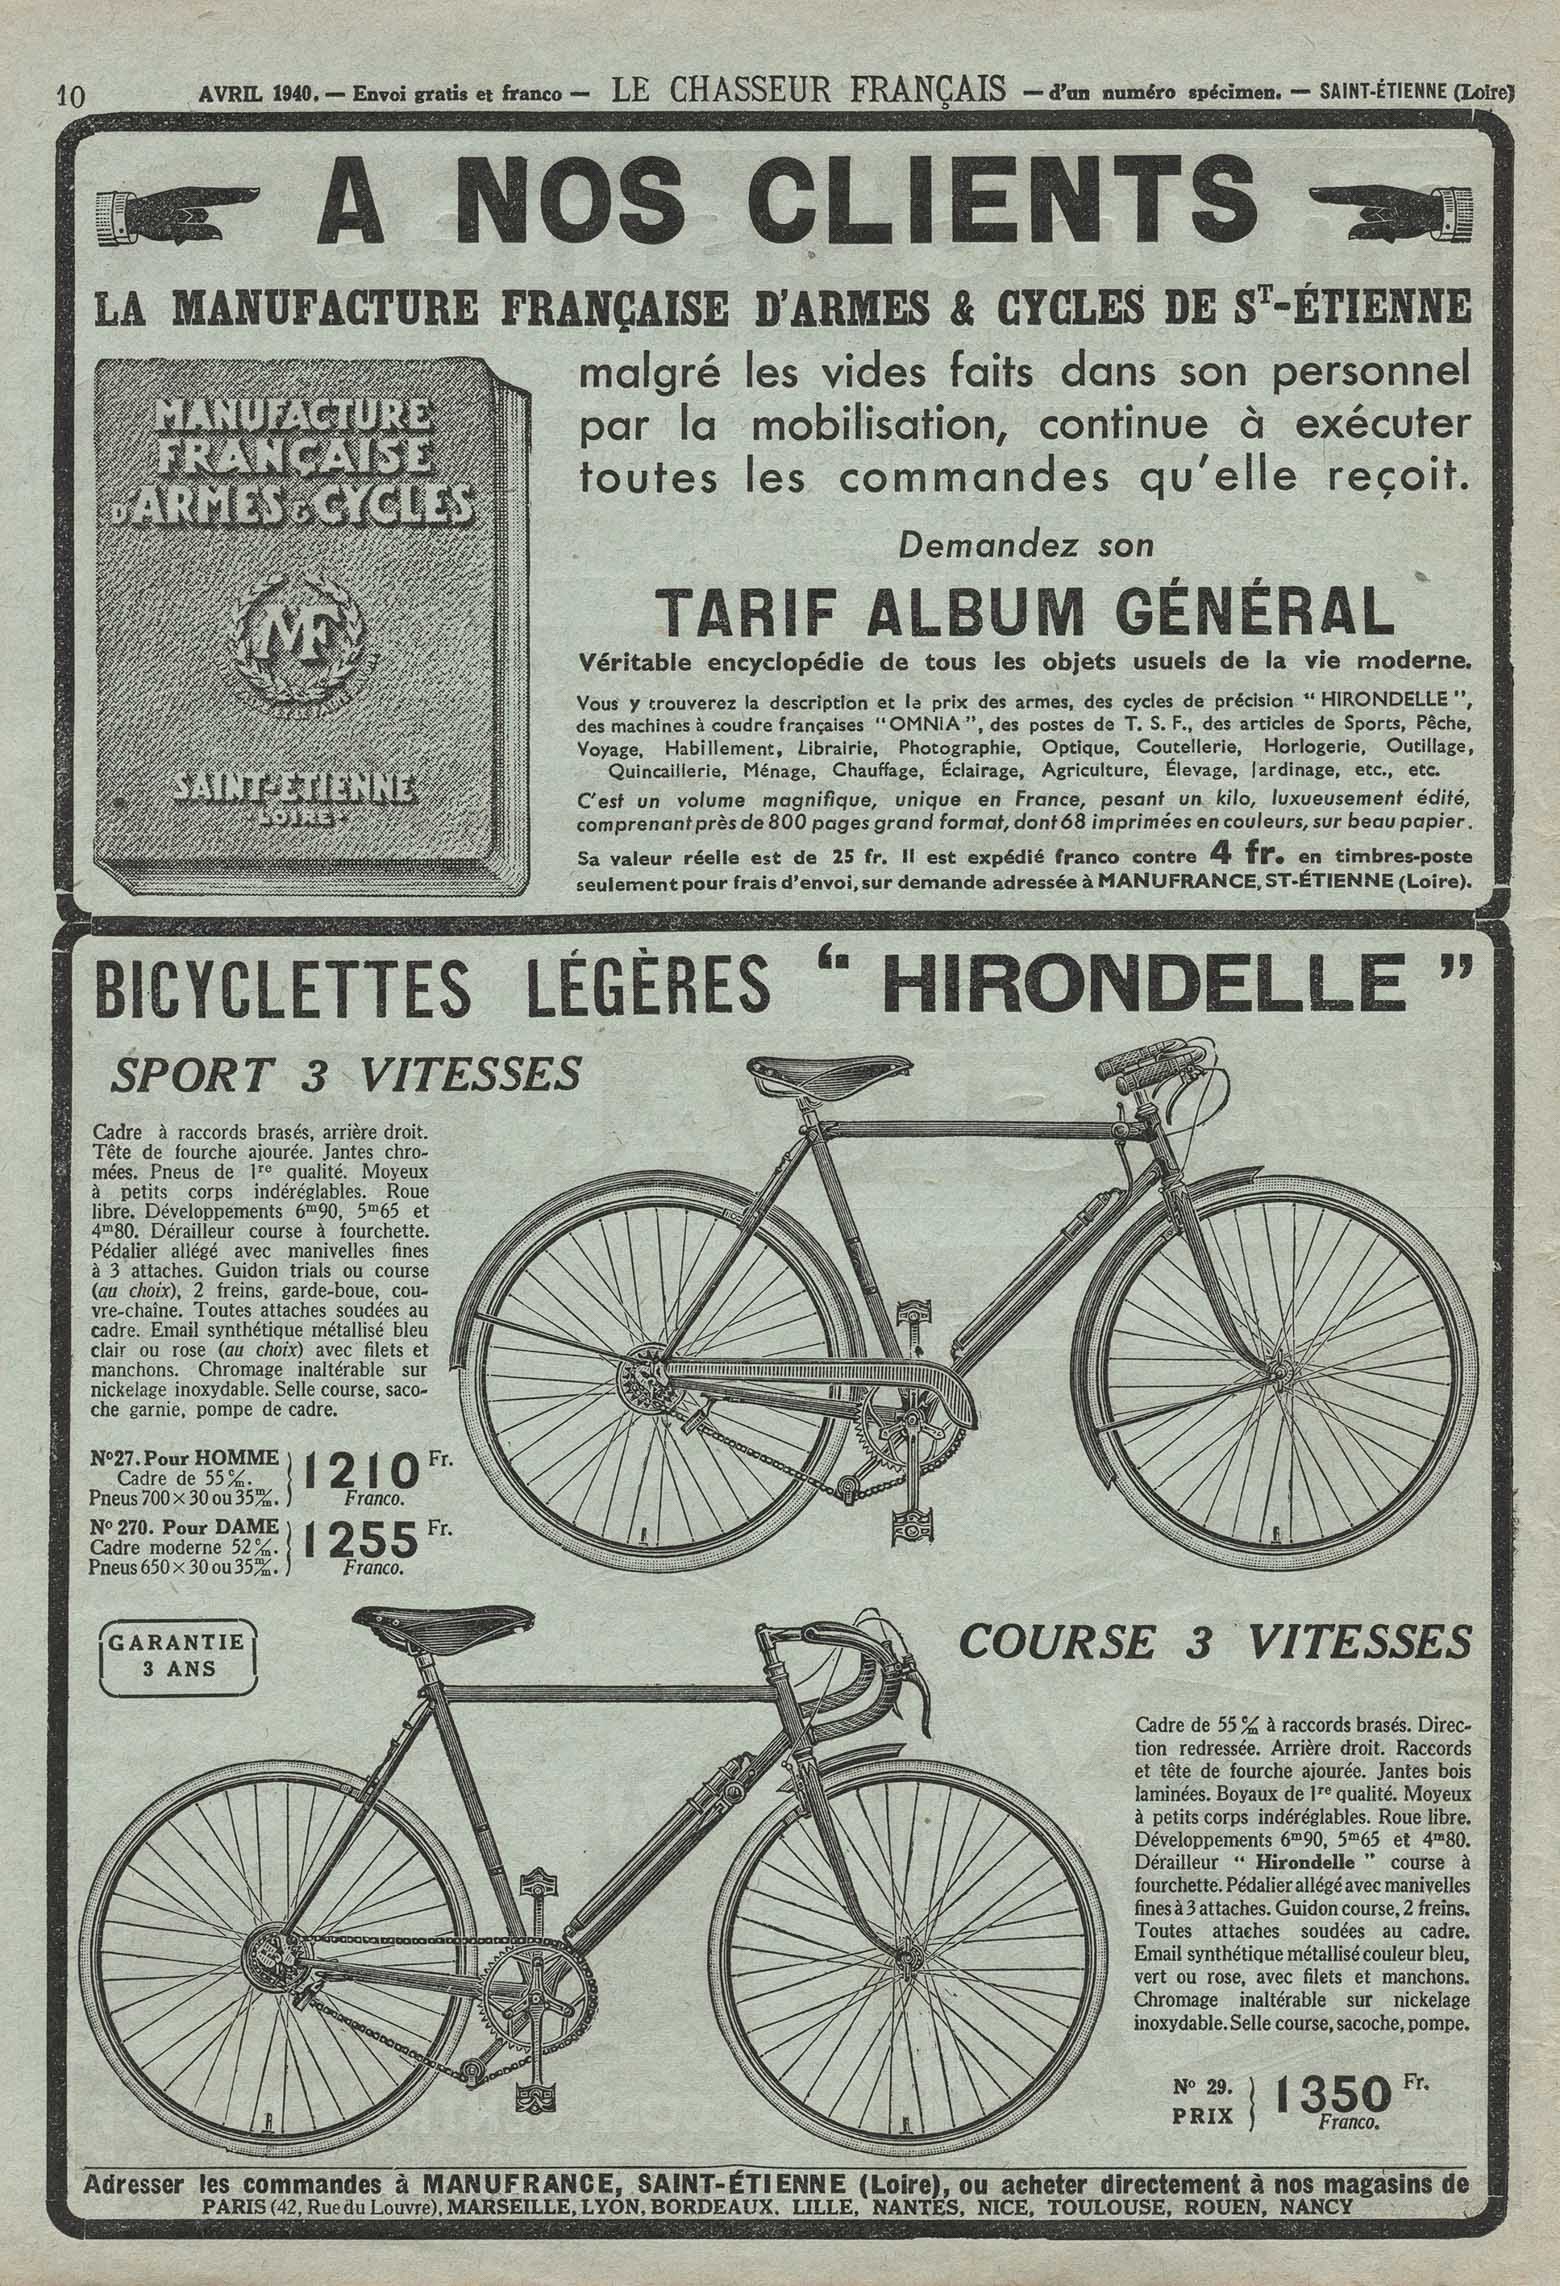 Le Chasseur Francais April 1940 Hirondelle advert main image